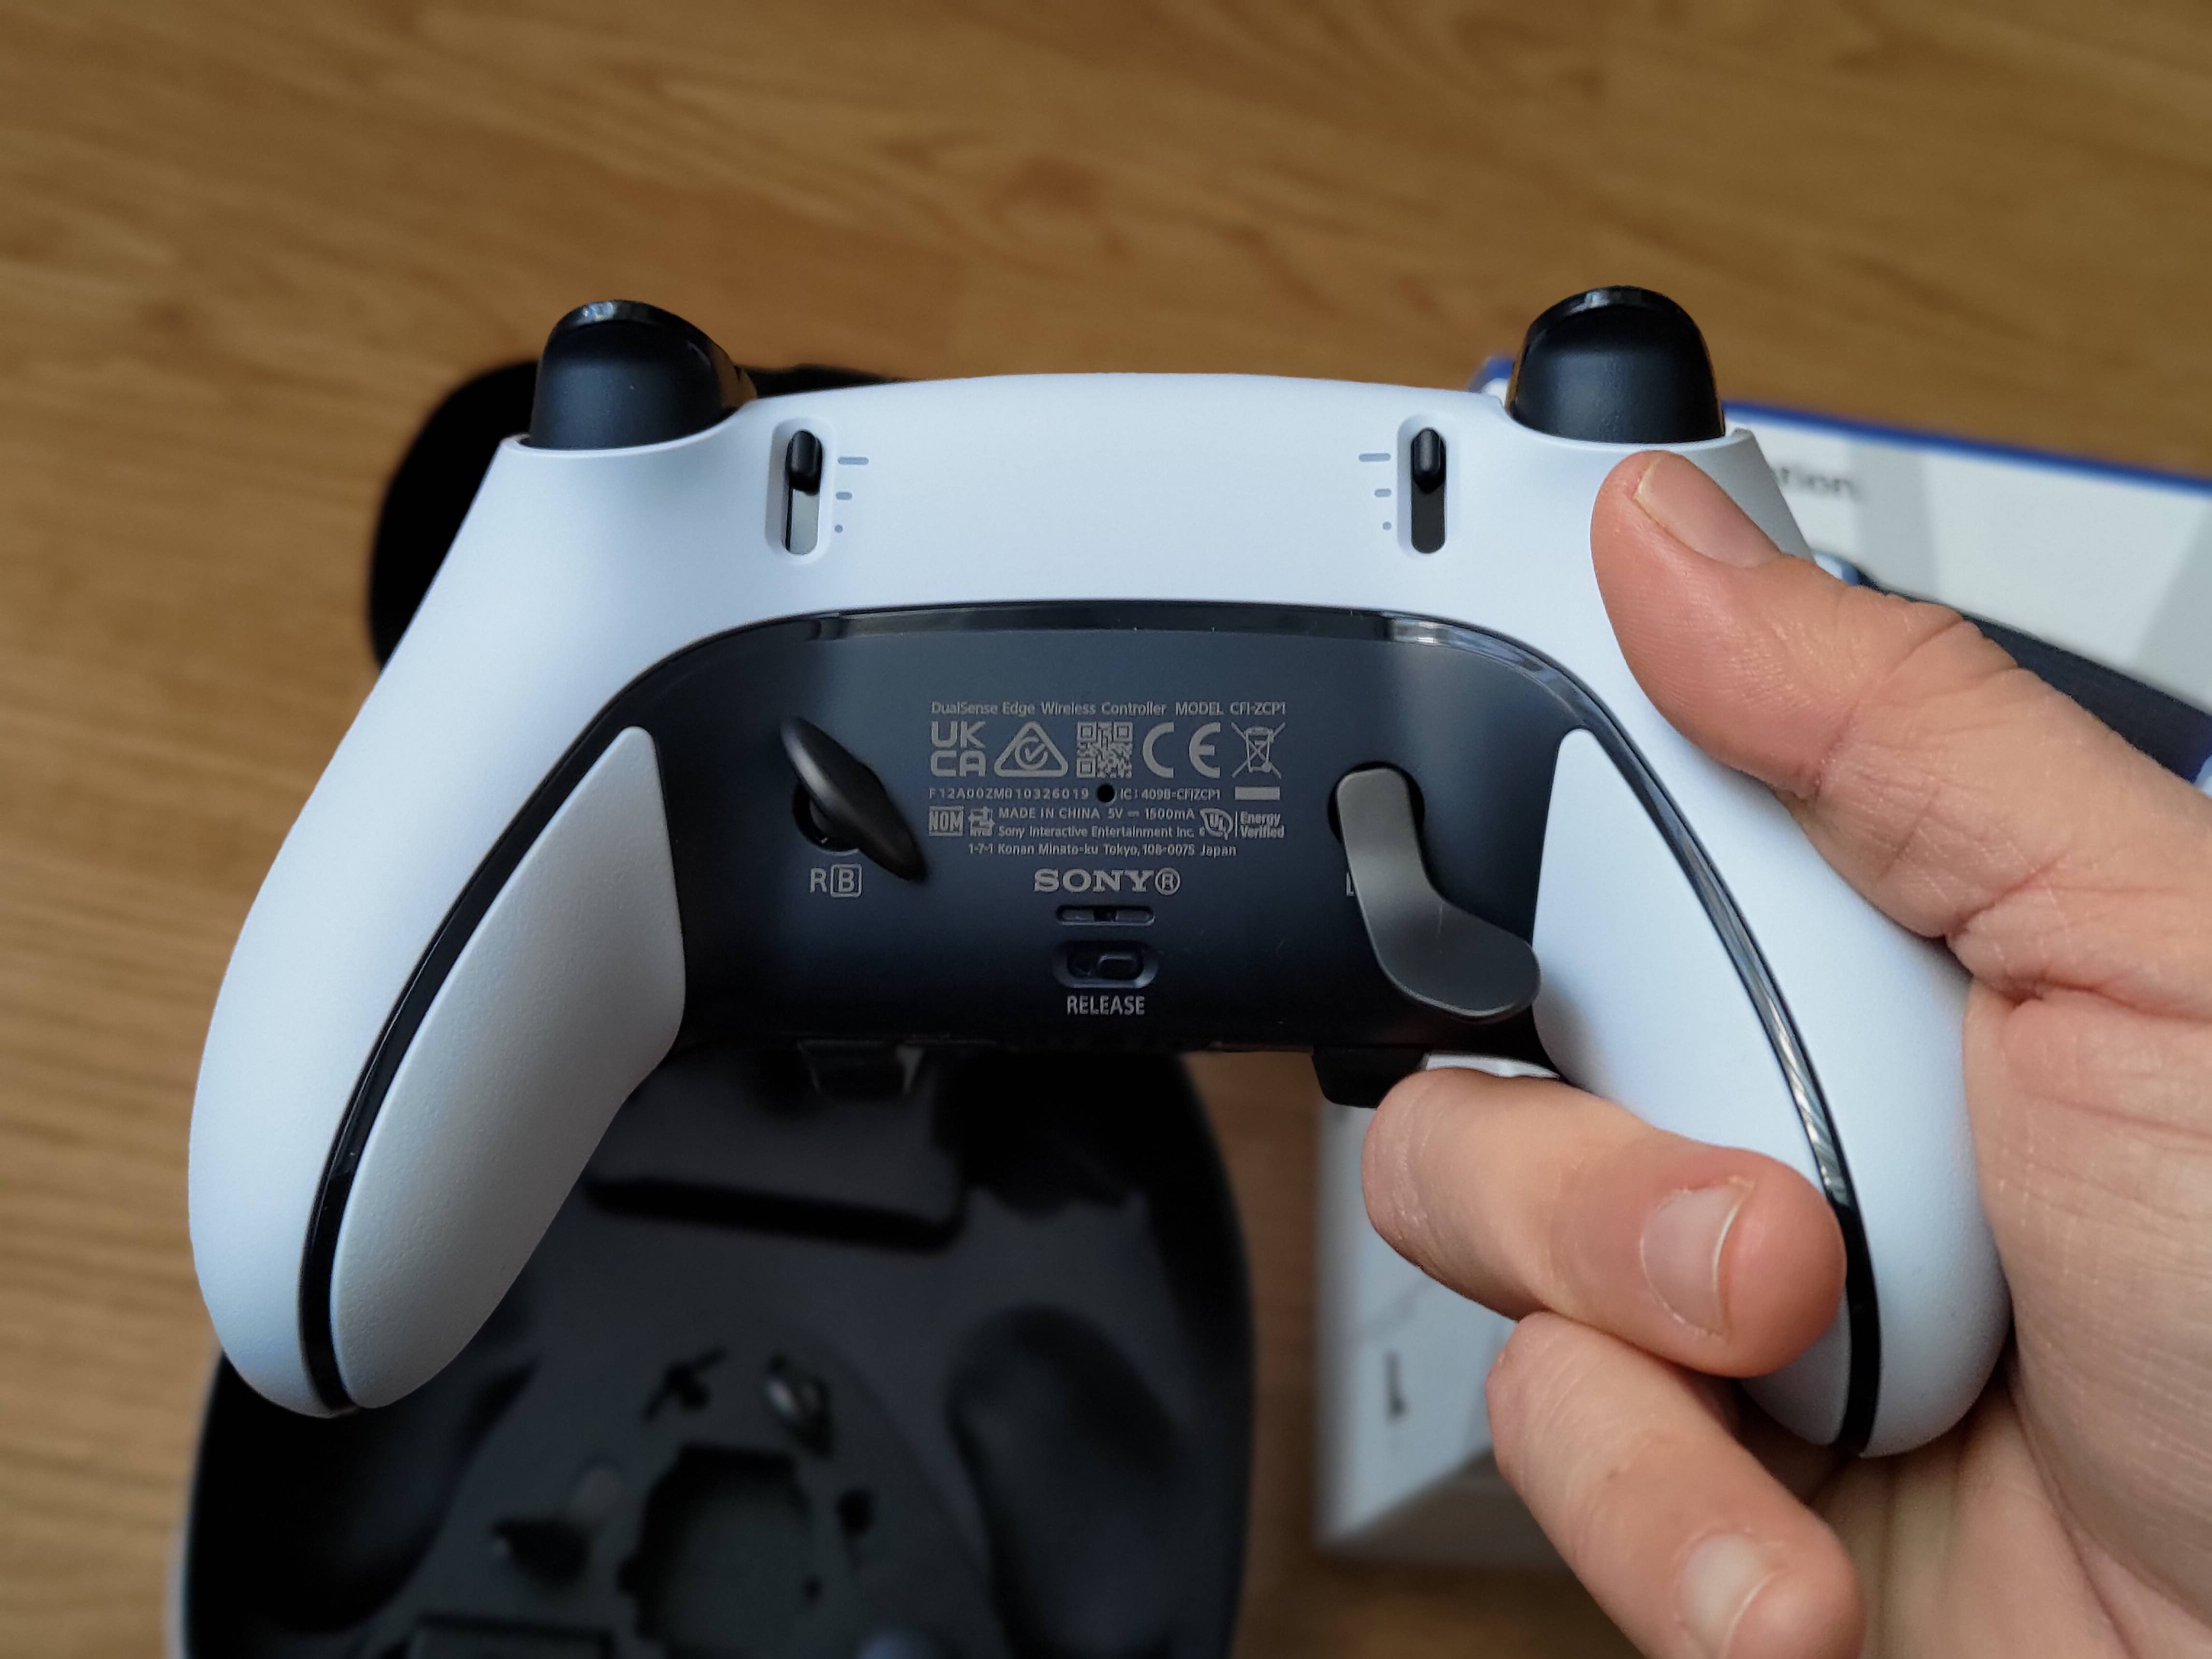 Dualsense Edge Wireless Controller - ¡El mando PRO de PlayStation ya está  aquí!